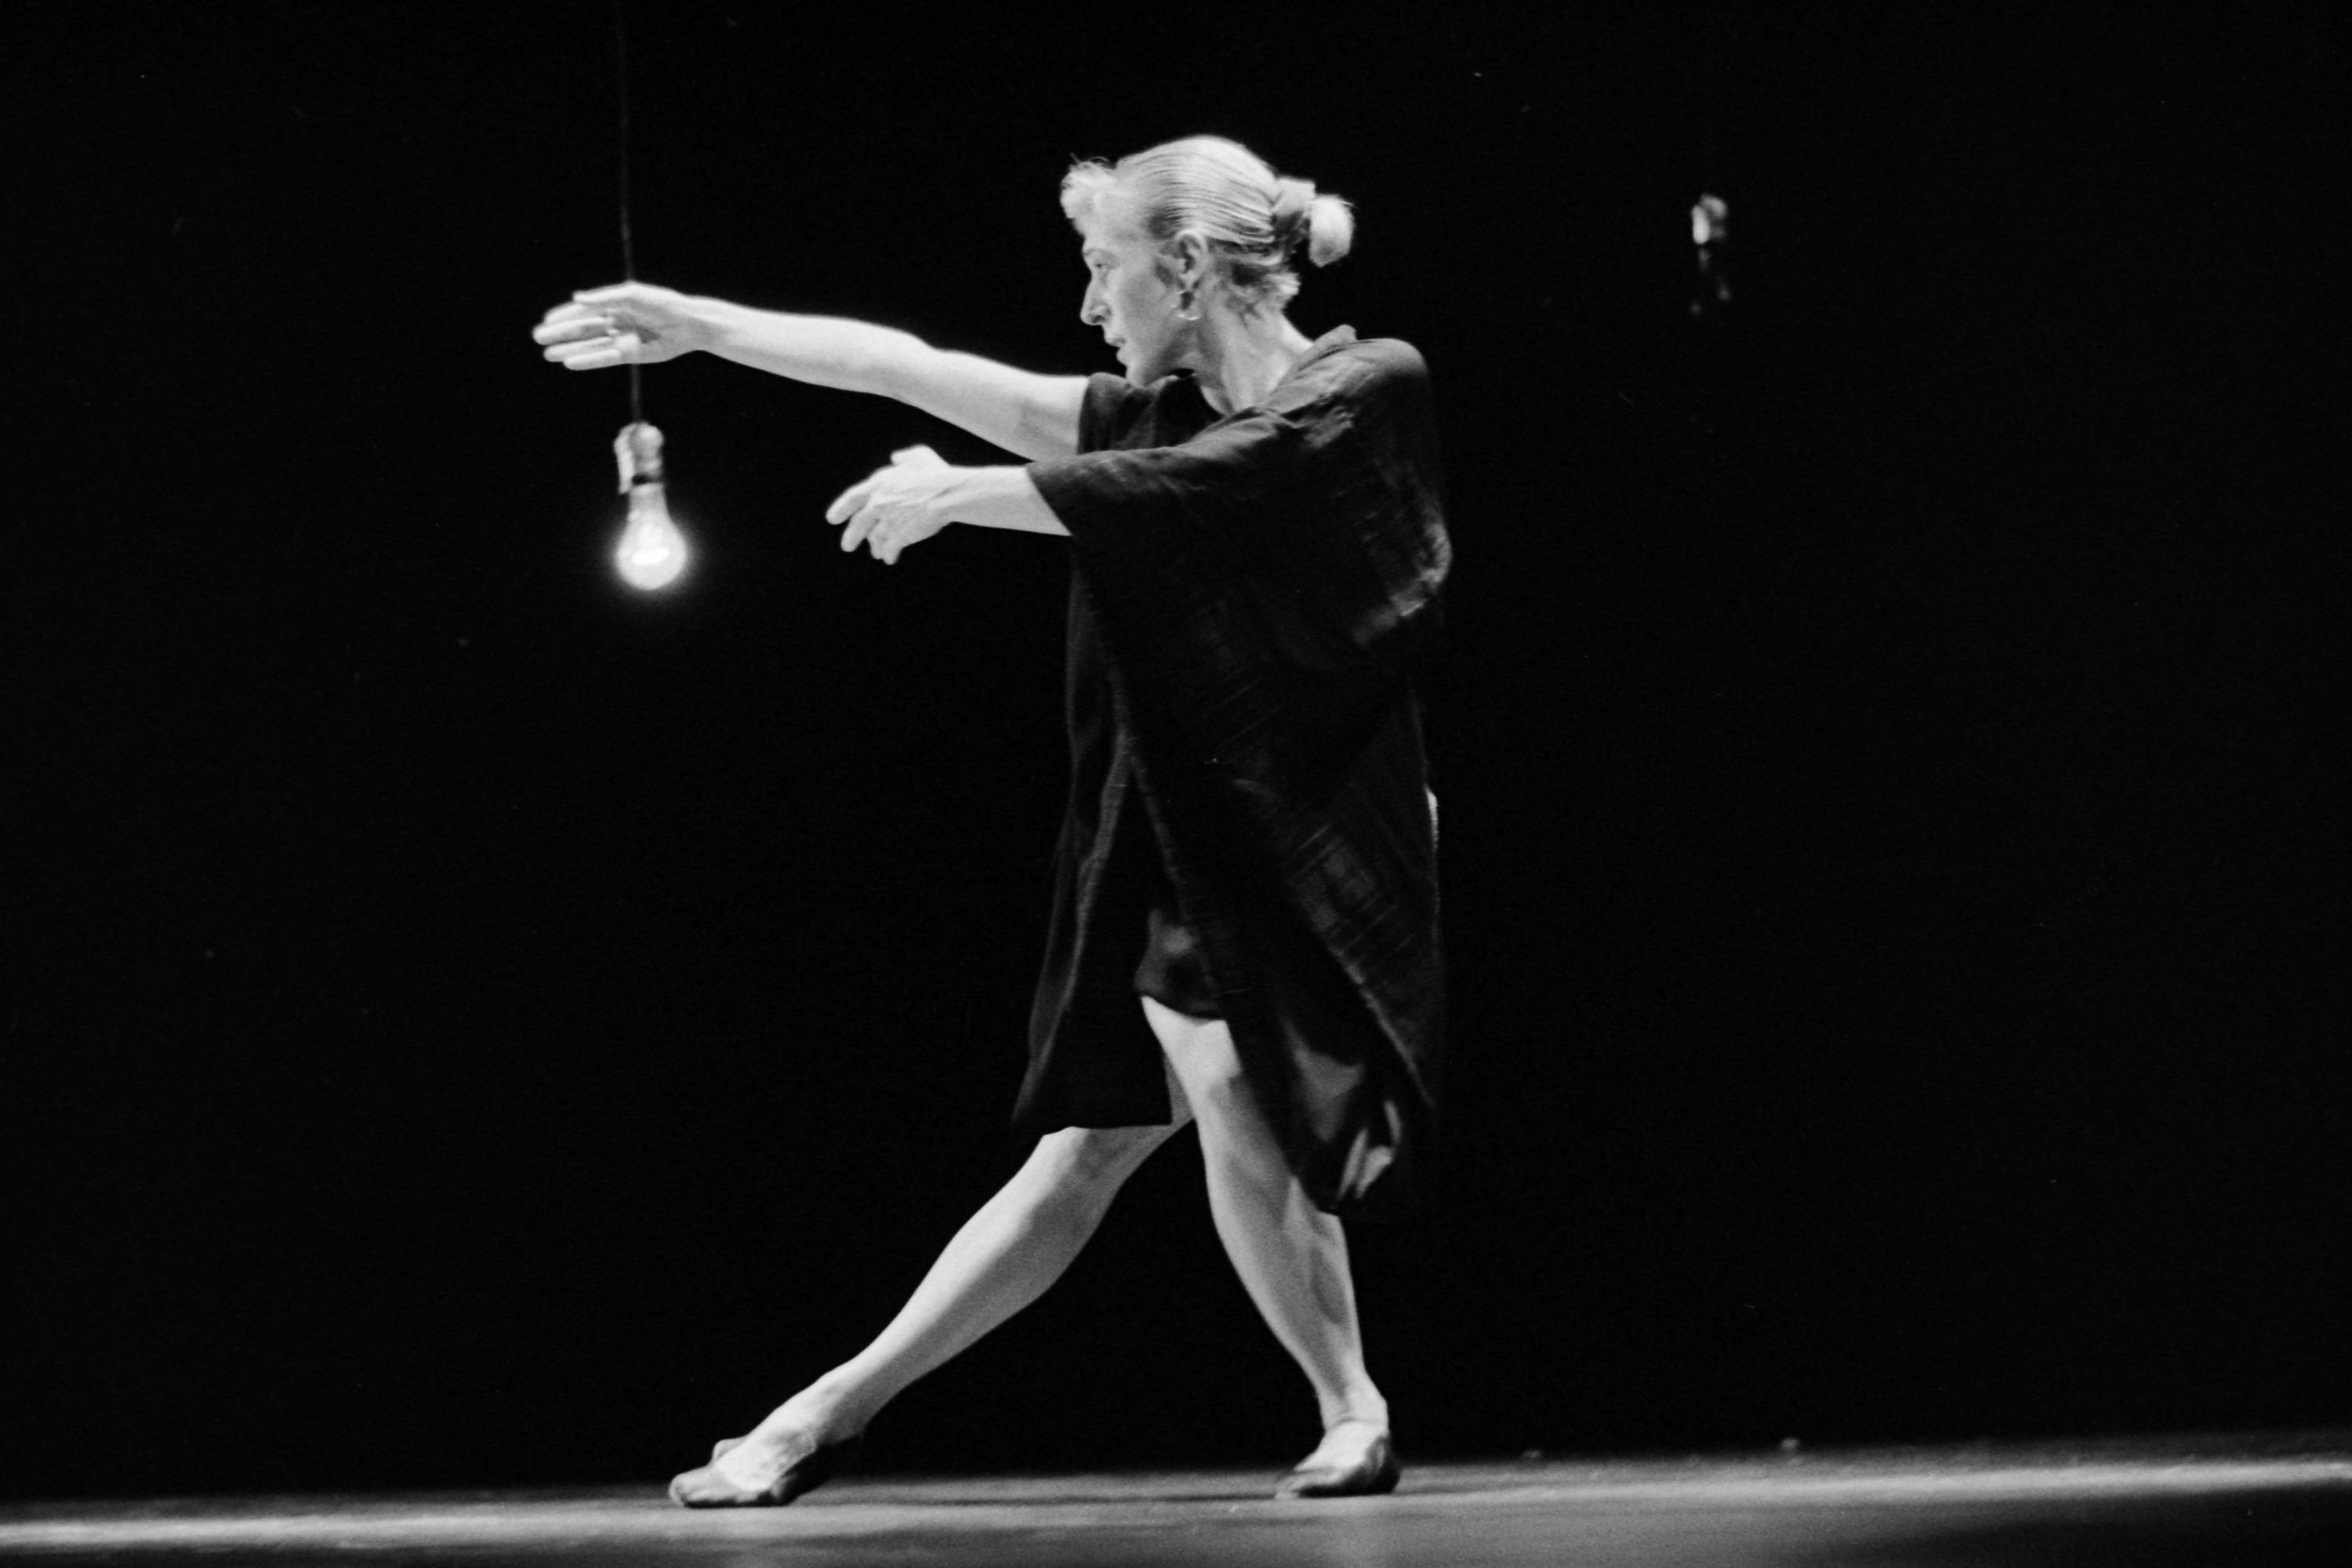 舞者的手臂、腿和視線都向著左邊的黑白照